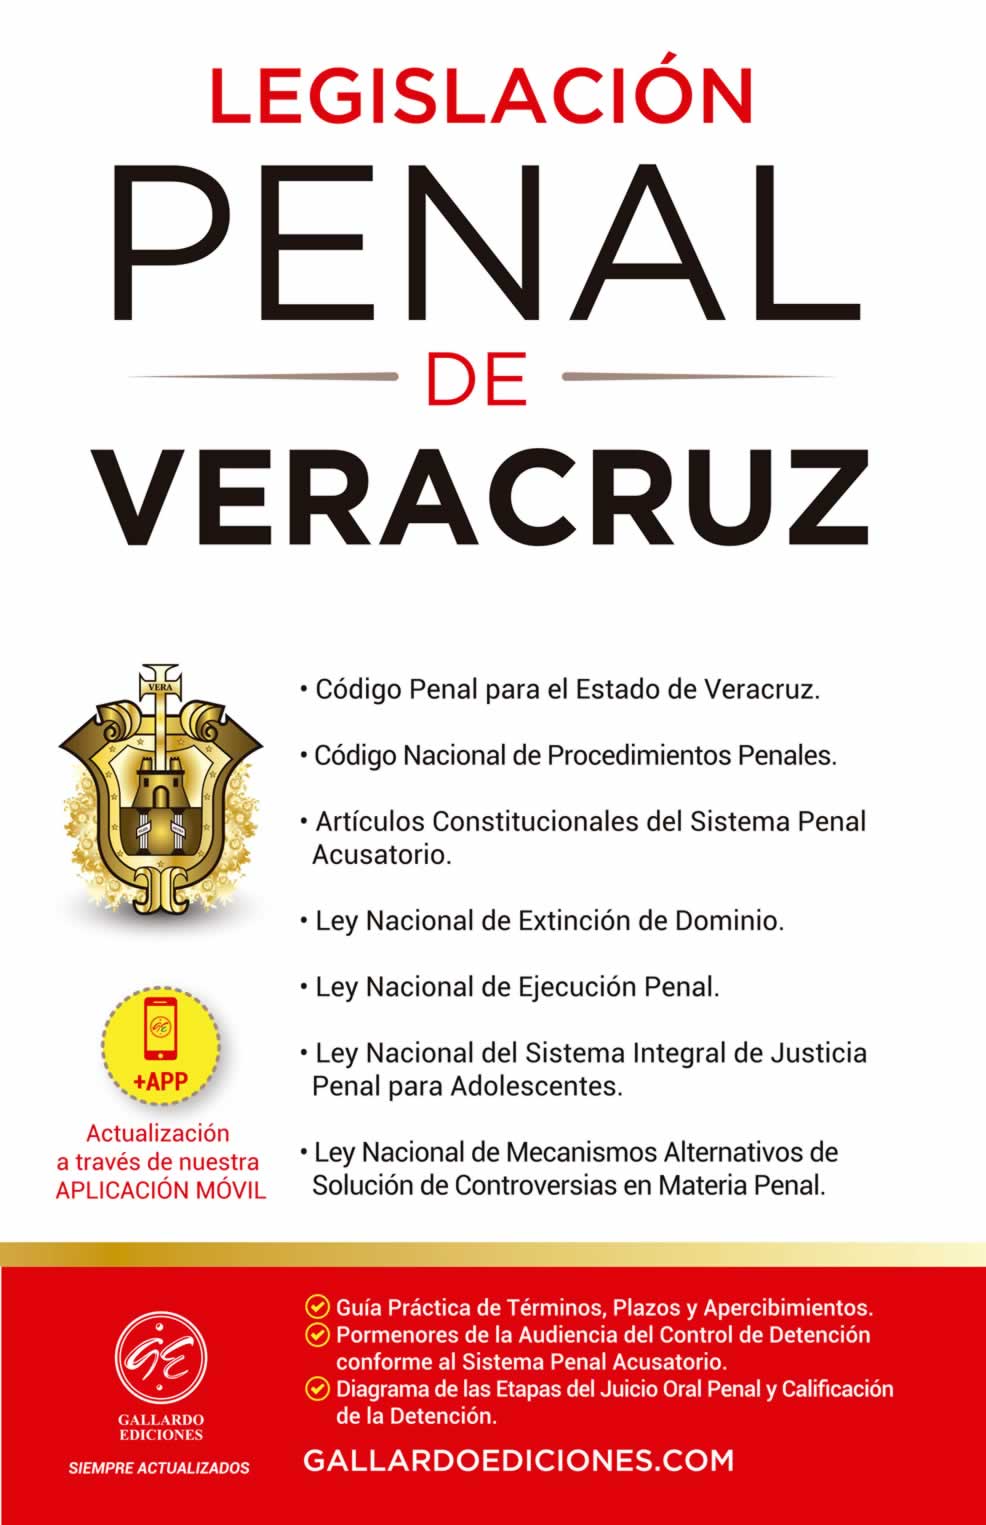 Legislación Penal de Veracruz 2021 Gallardo Ediciones